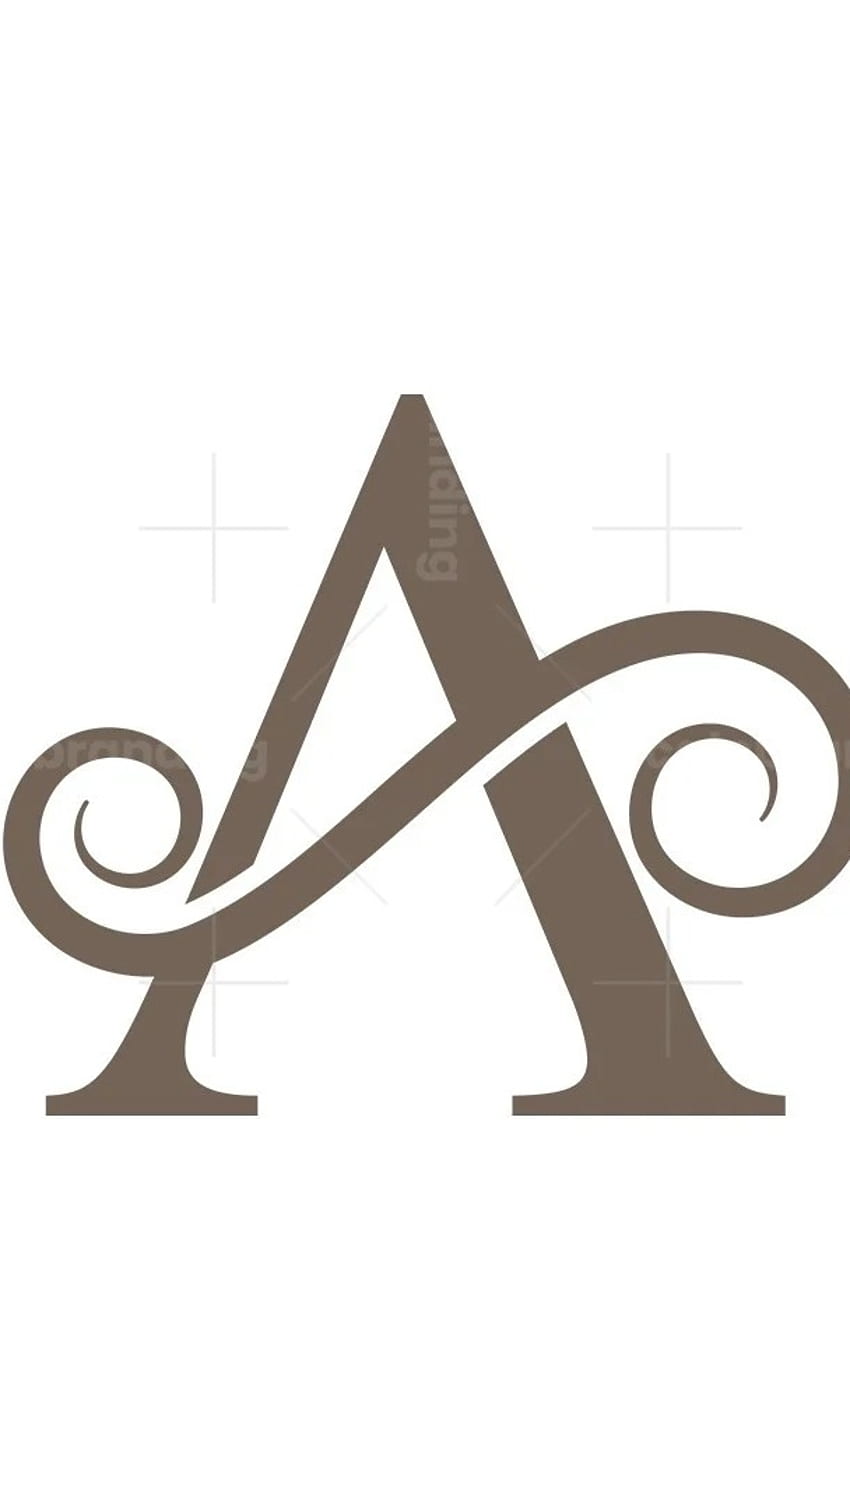 Logo Image Graphic Design Desktop Wallpaper PNG 512x512px Logo Brand  Decal Emblem Letter Download Free